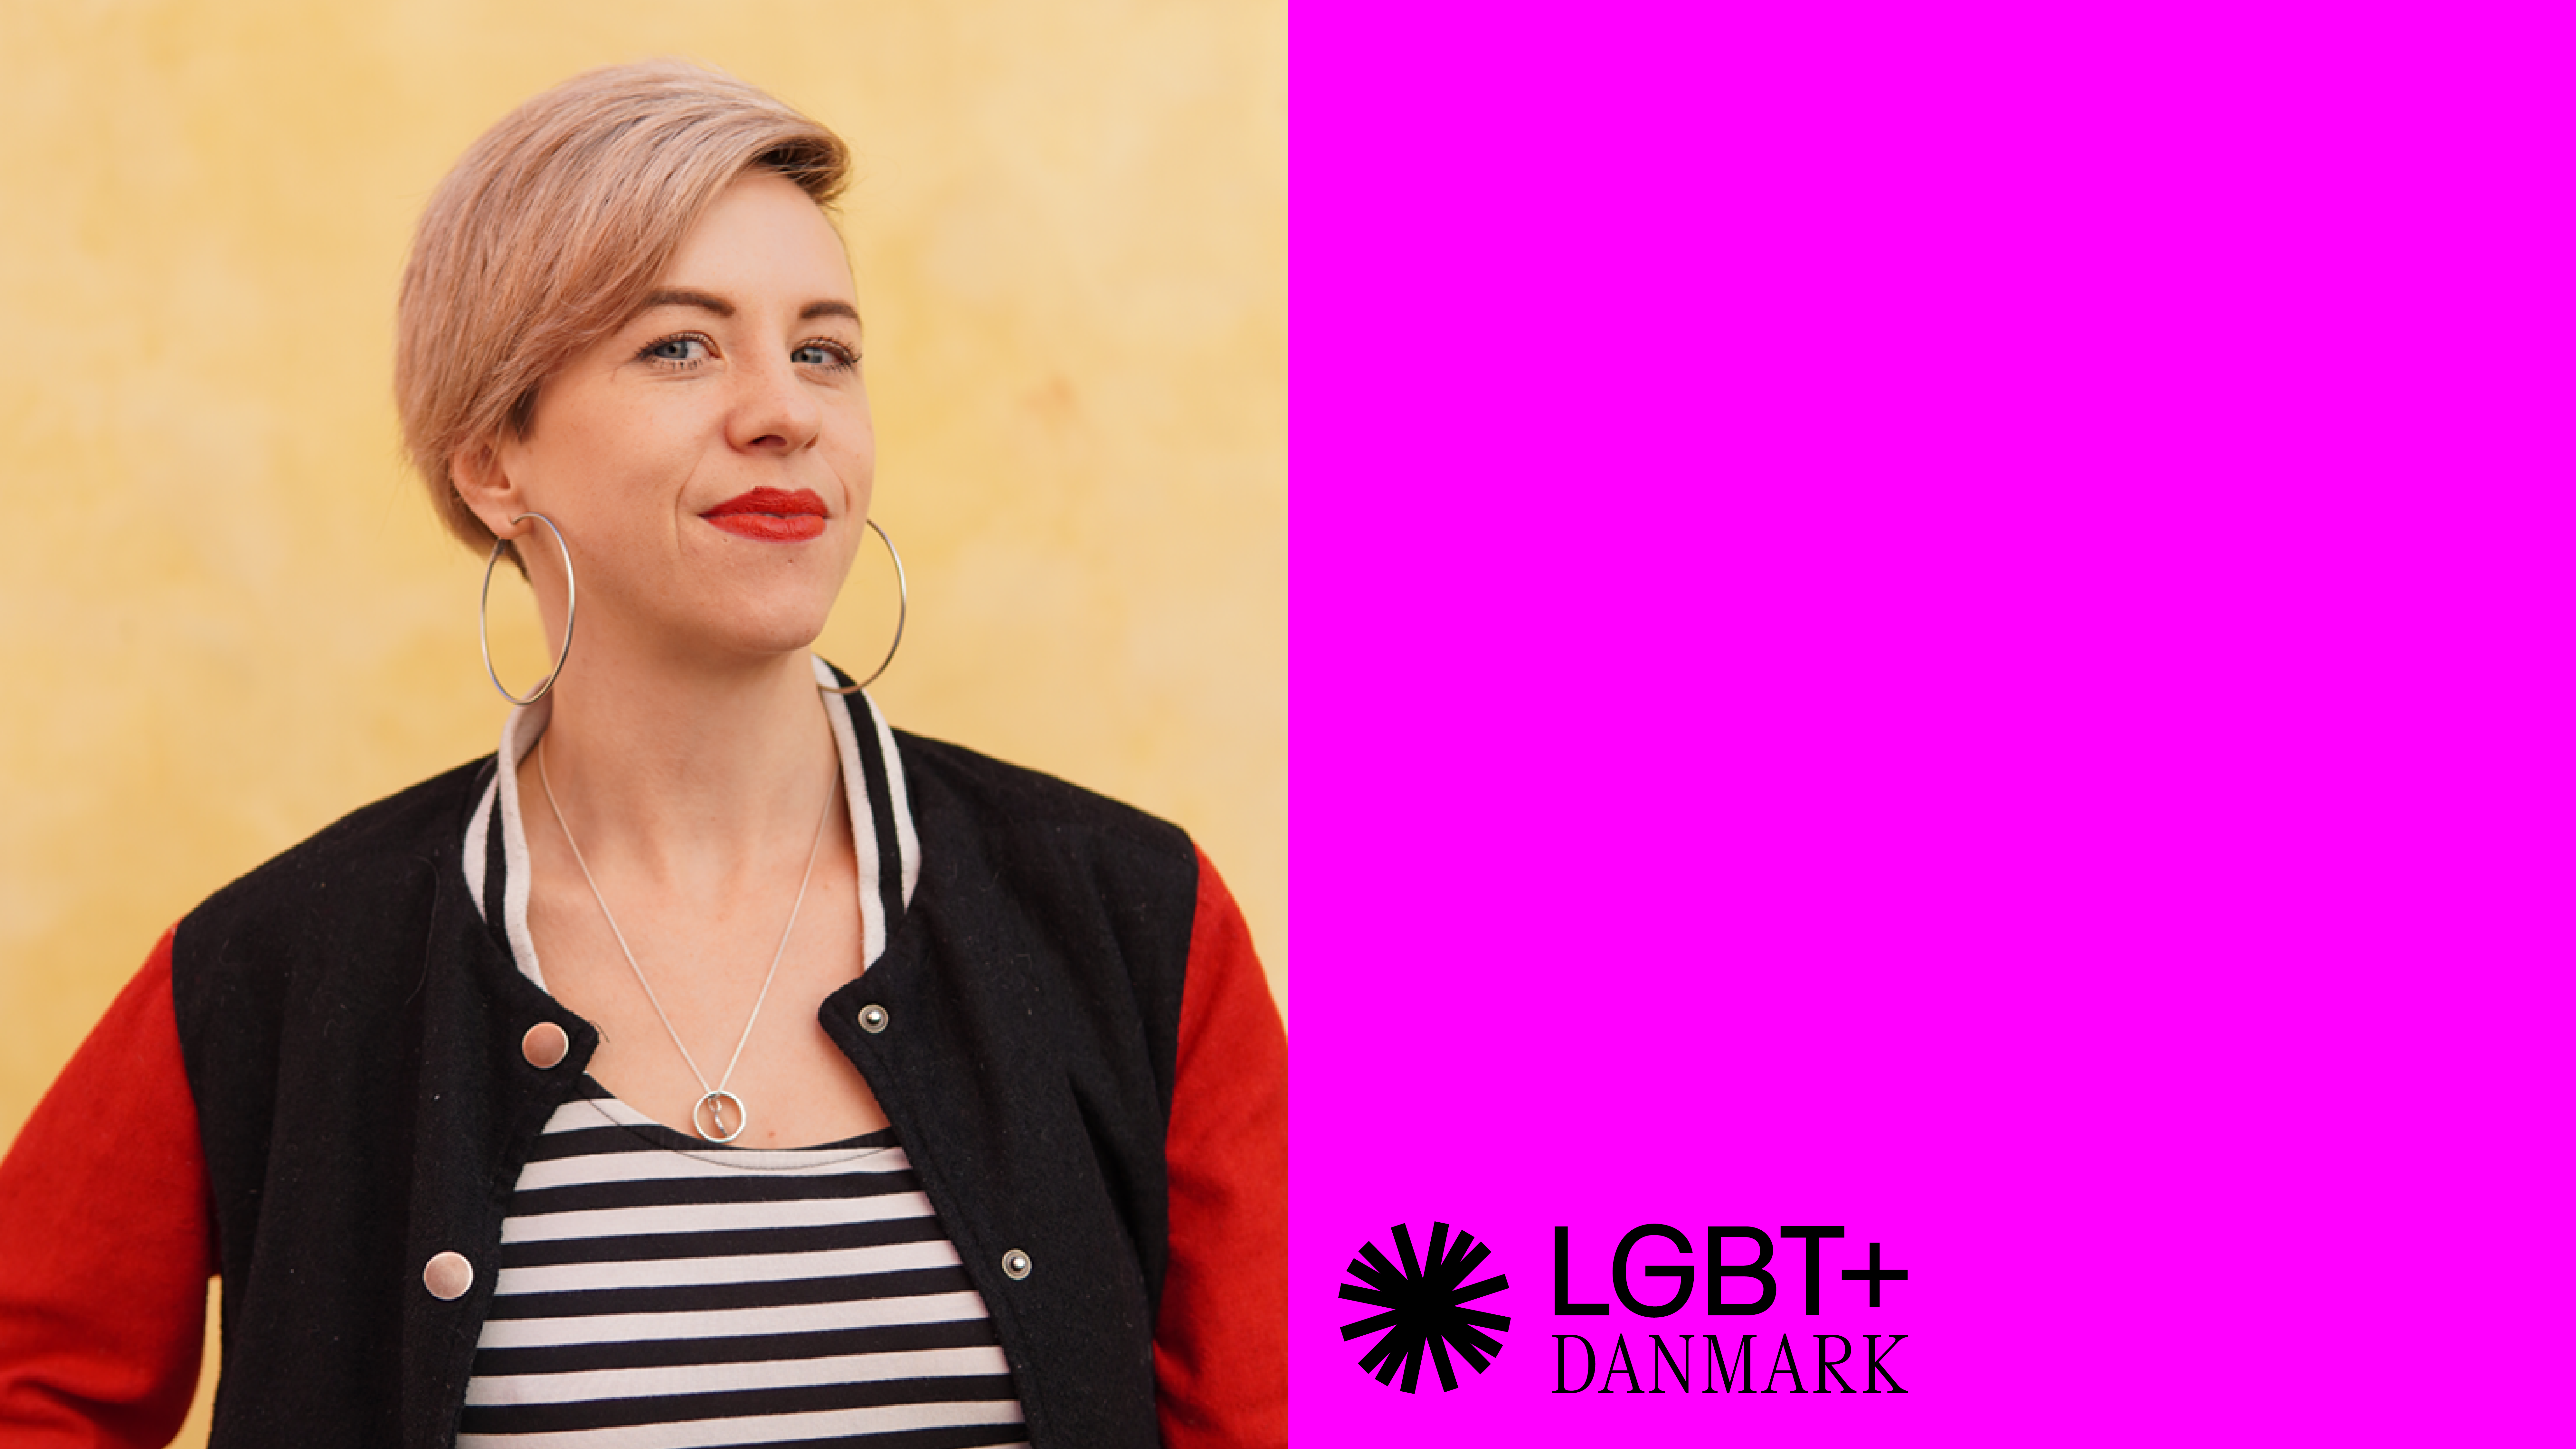 Billede af programleder for rådsgivningsindsatserne Sylvia til venstre. Billedet er delt i to og til højre er en ensfarvet magenta baggrund med LGBT+ Danmarks logo nede i venstre hjørne.